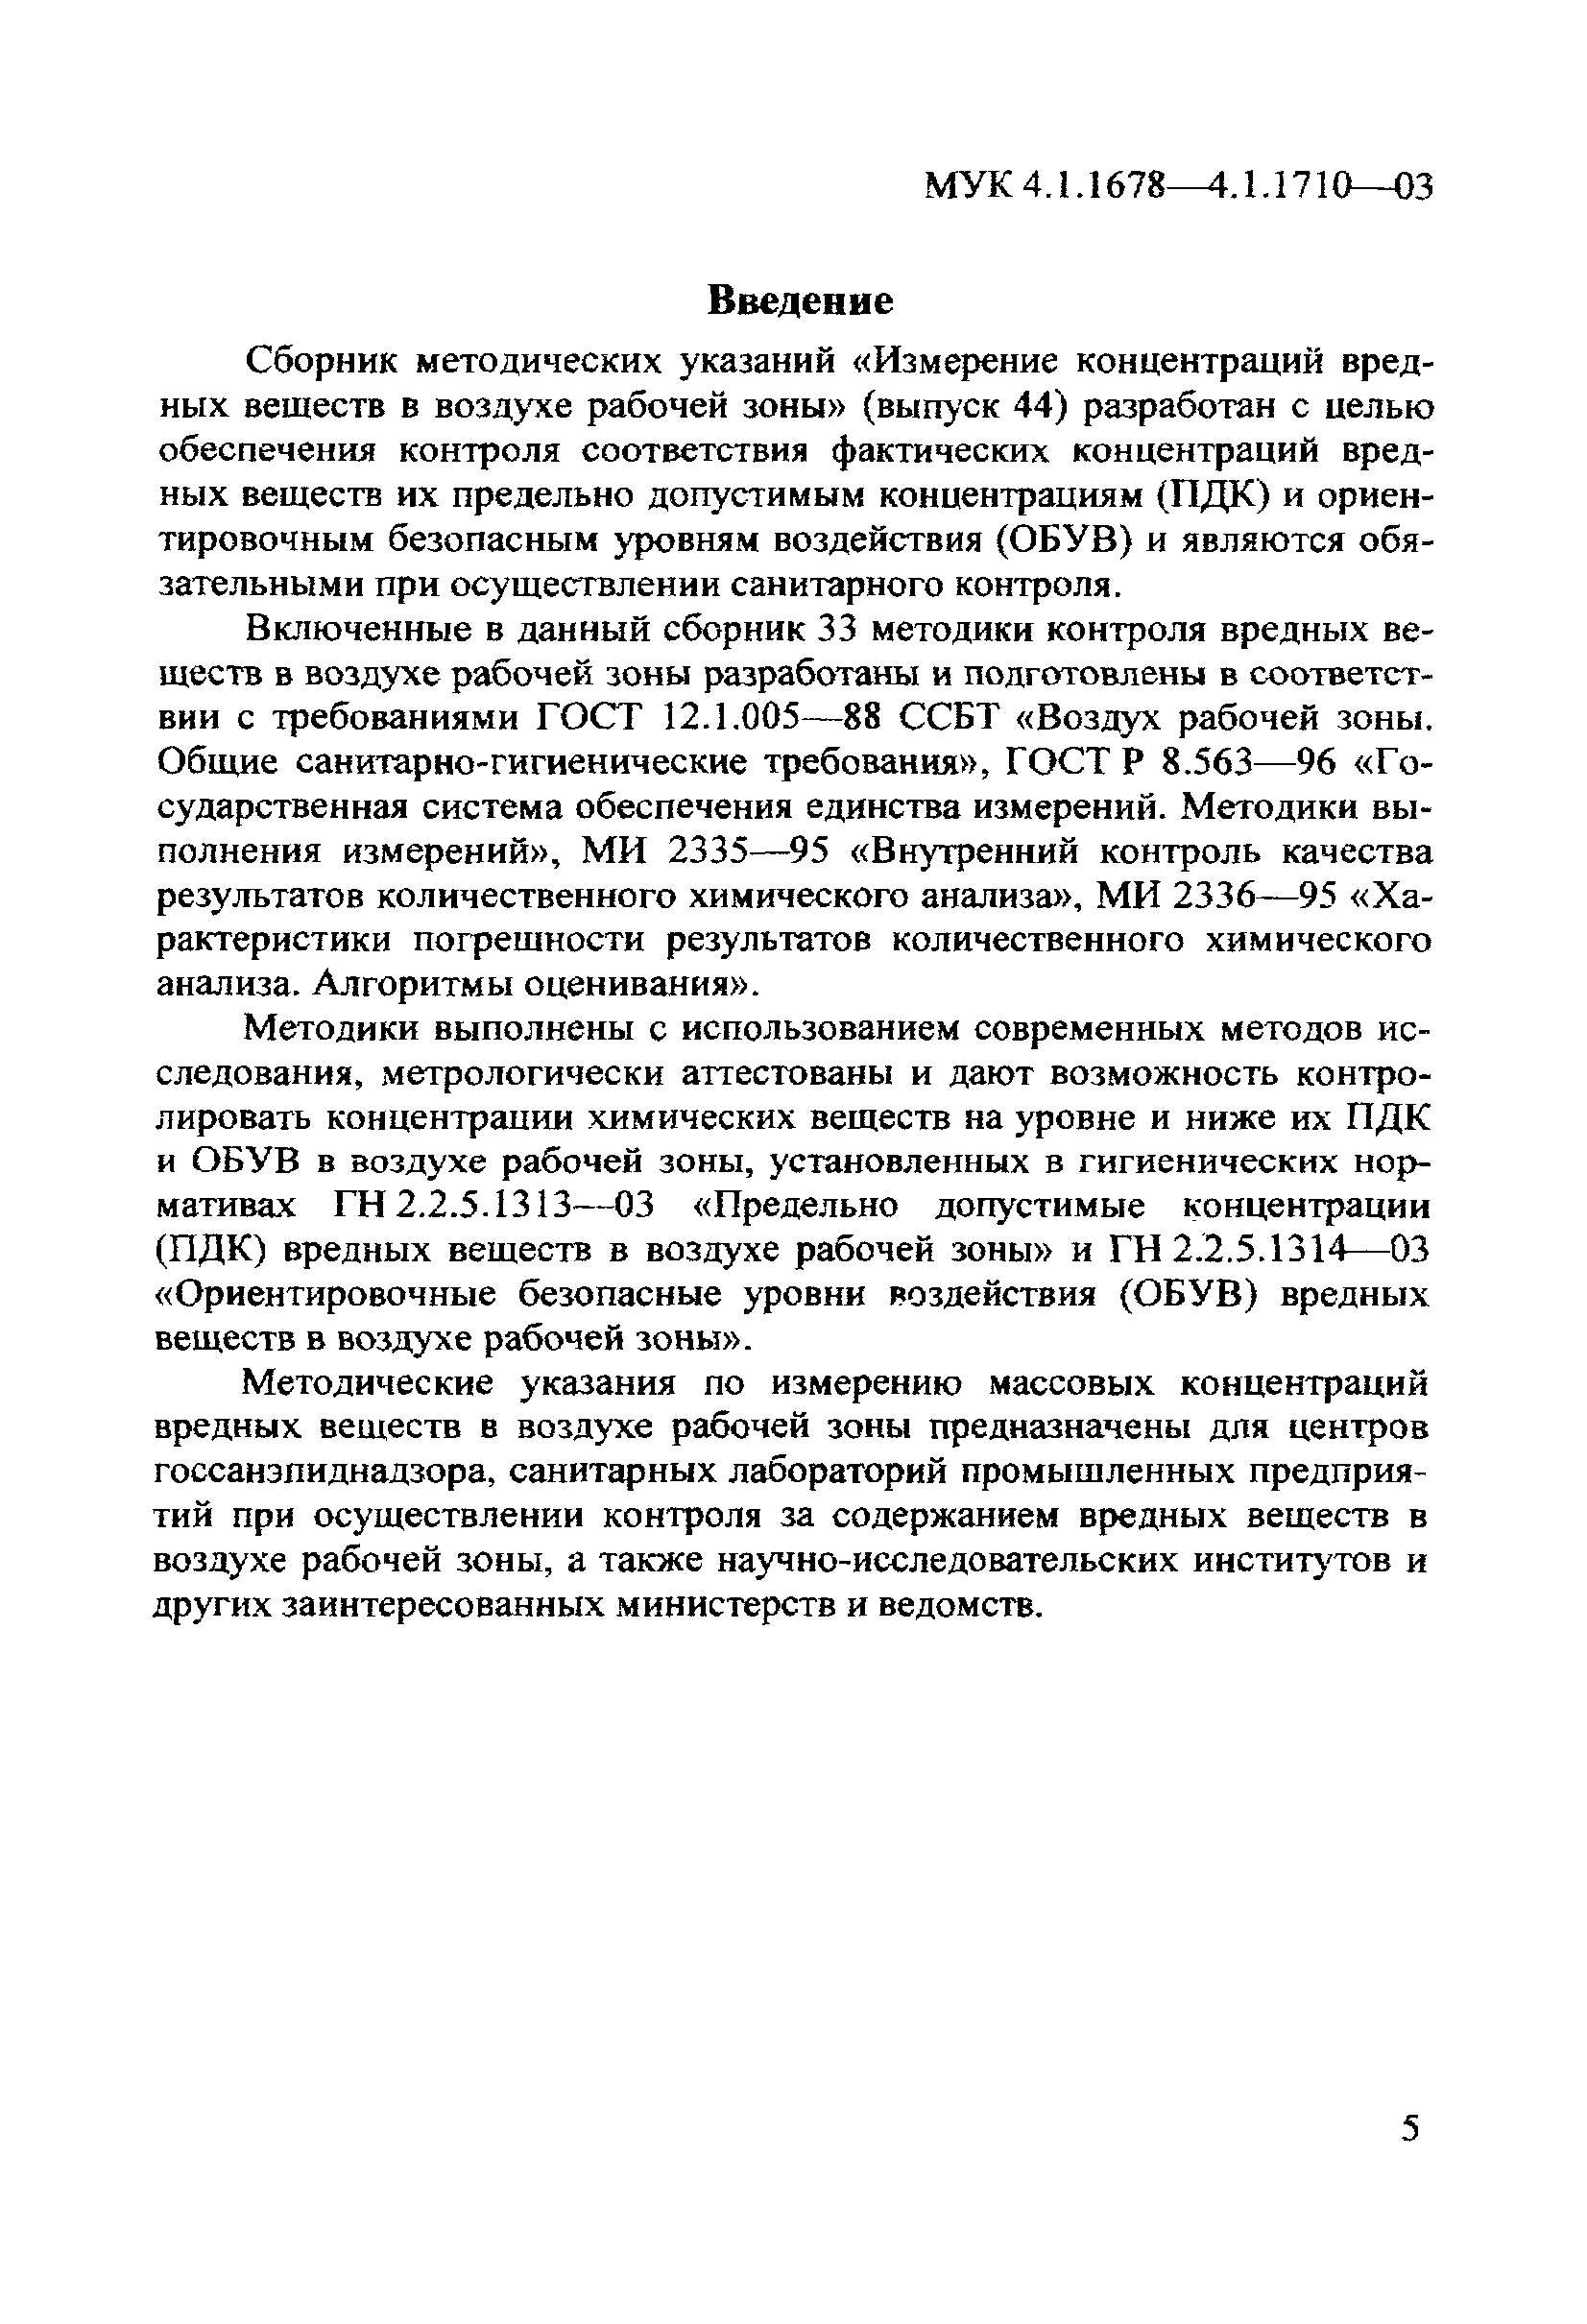 МУК 4.1.1683-03